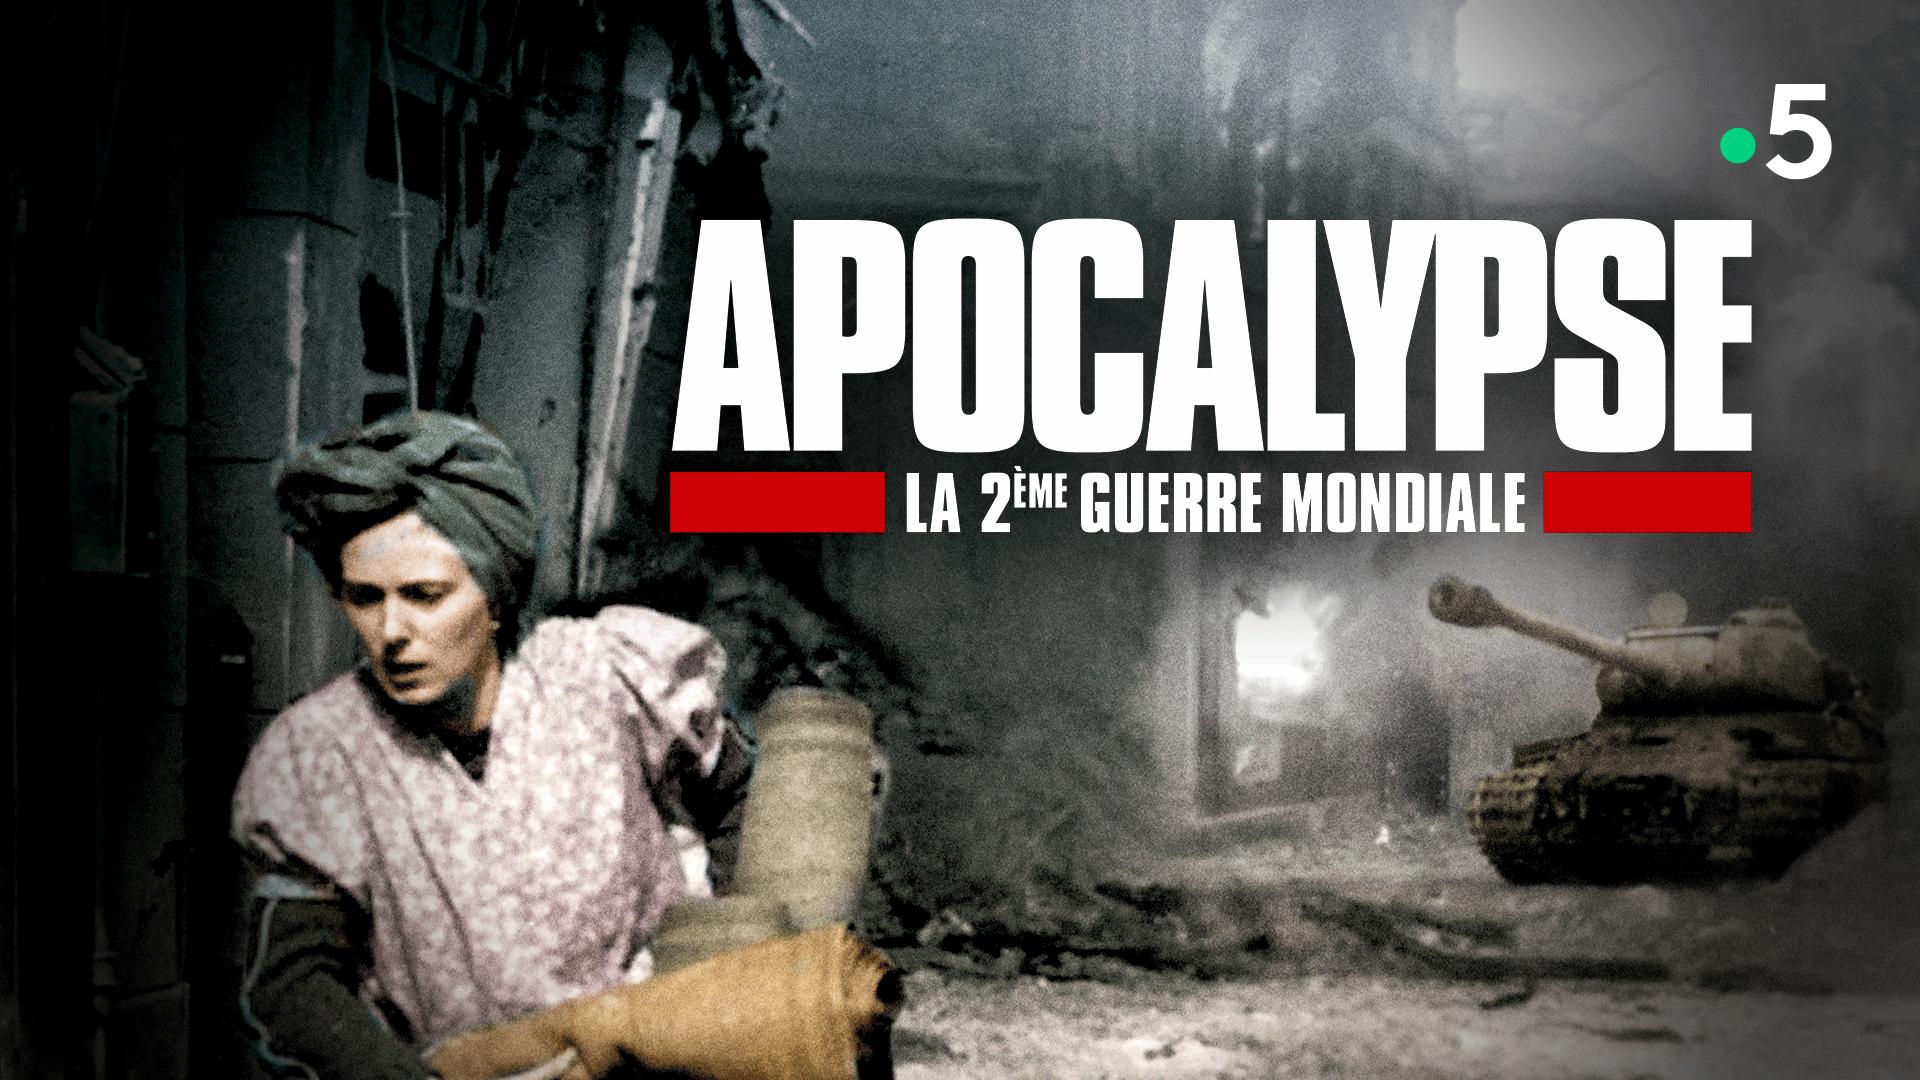 Apocalypse, la Deuxième Guerre mondiale